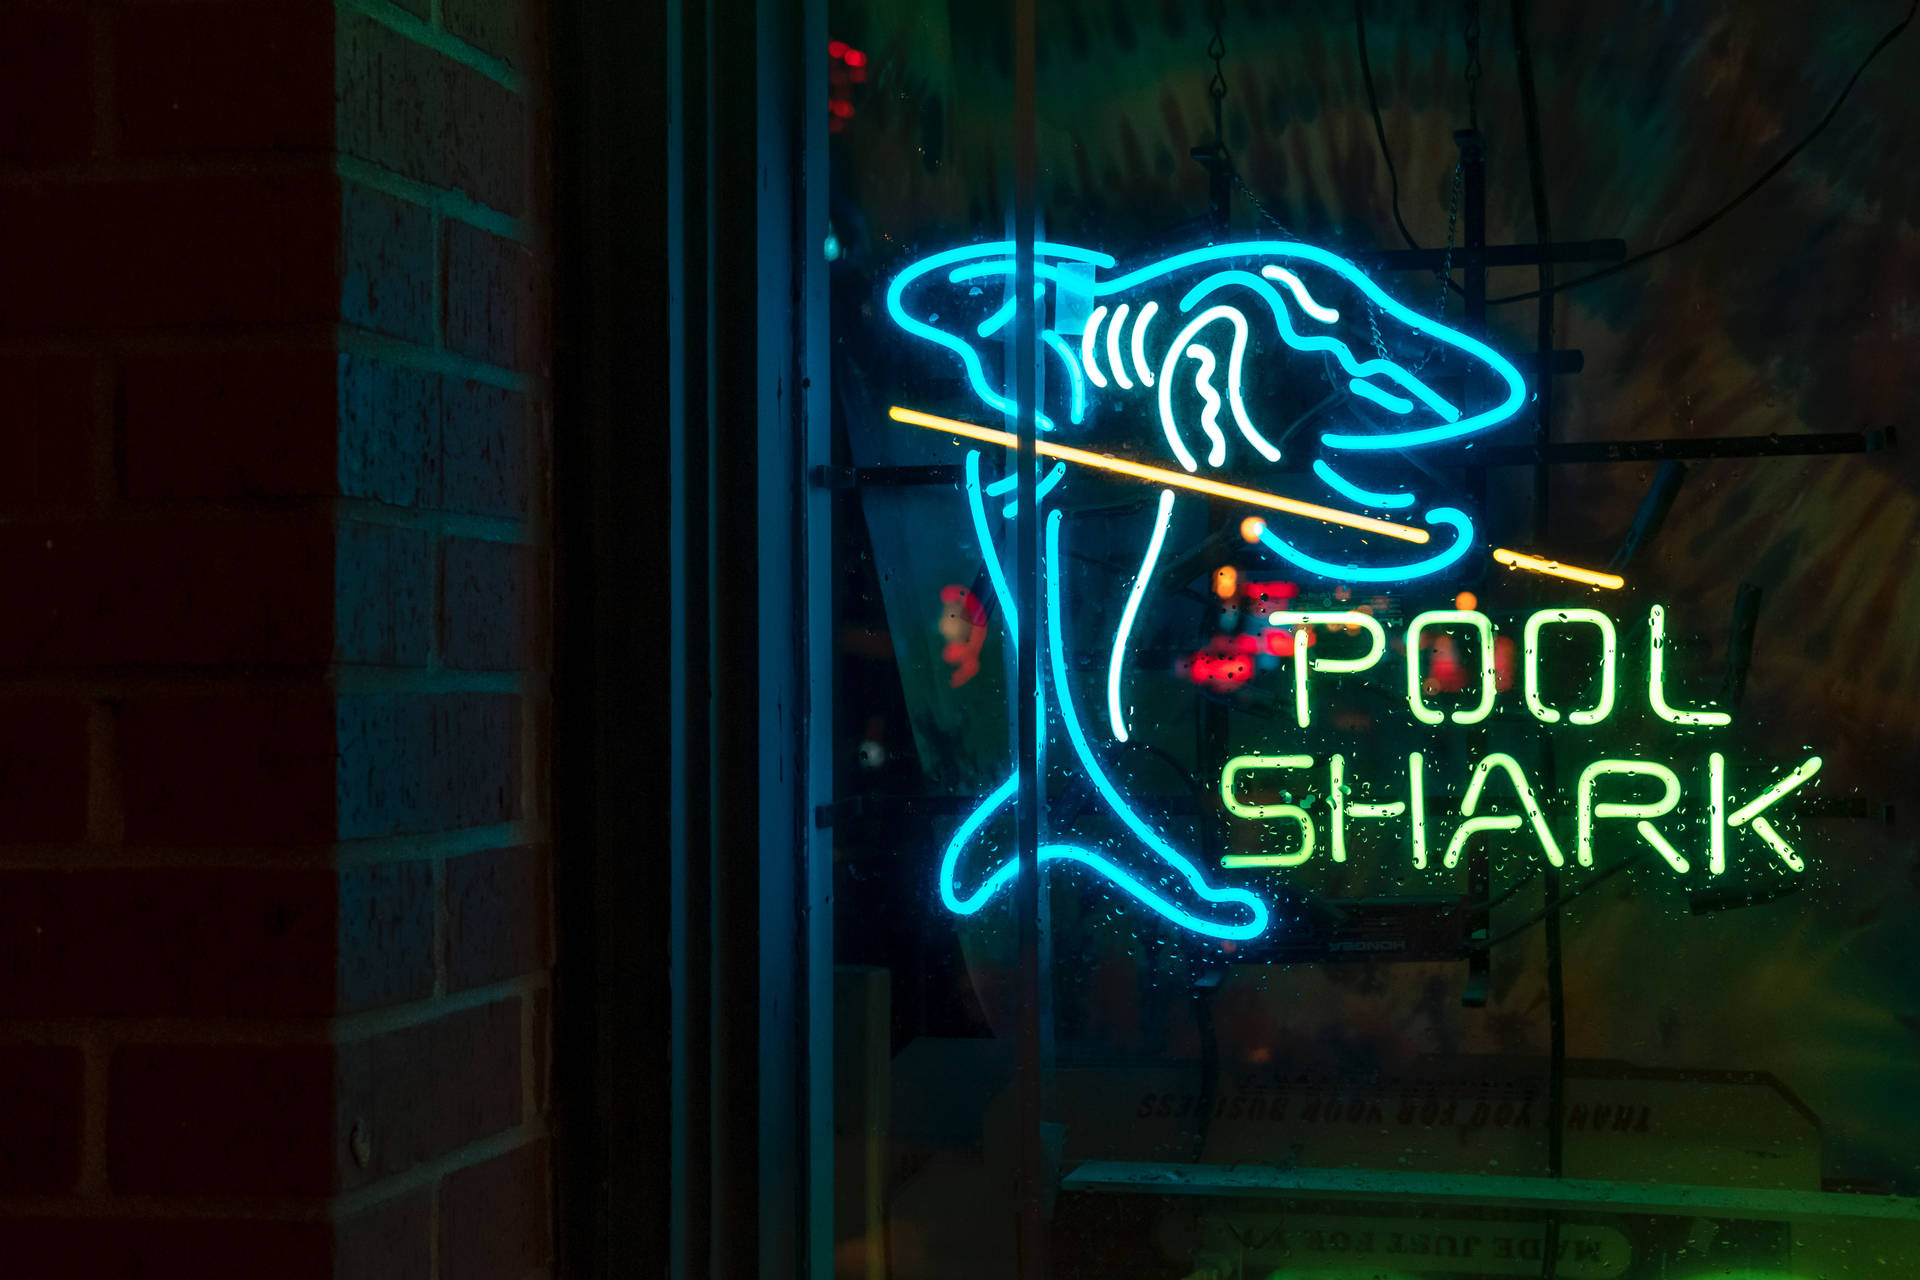 Pool Shark Signage Background